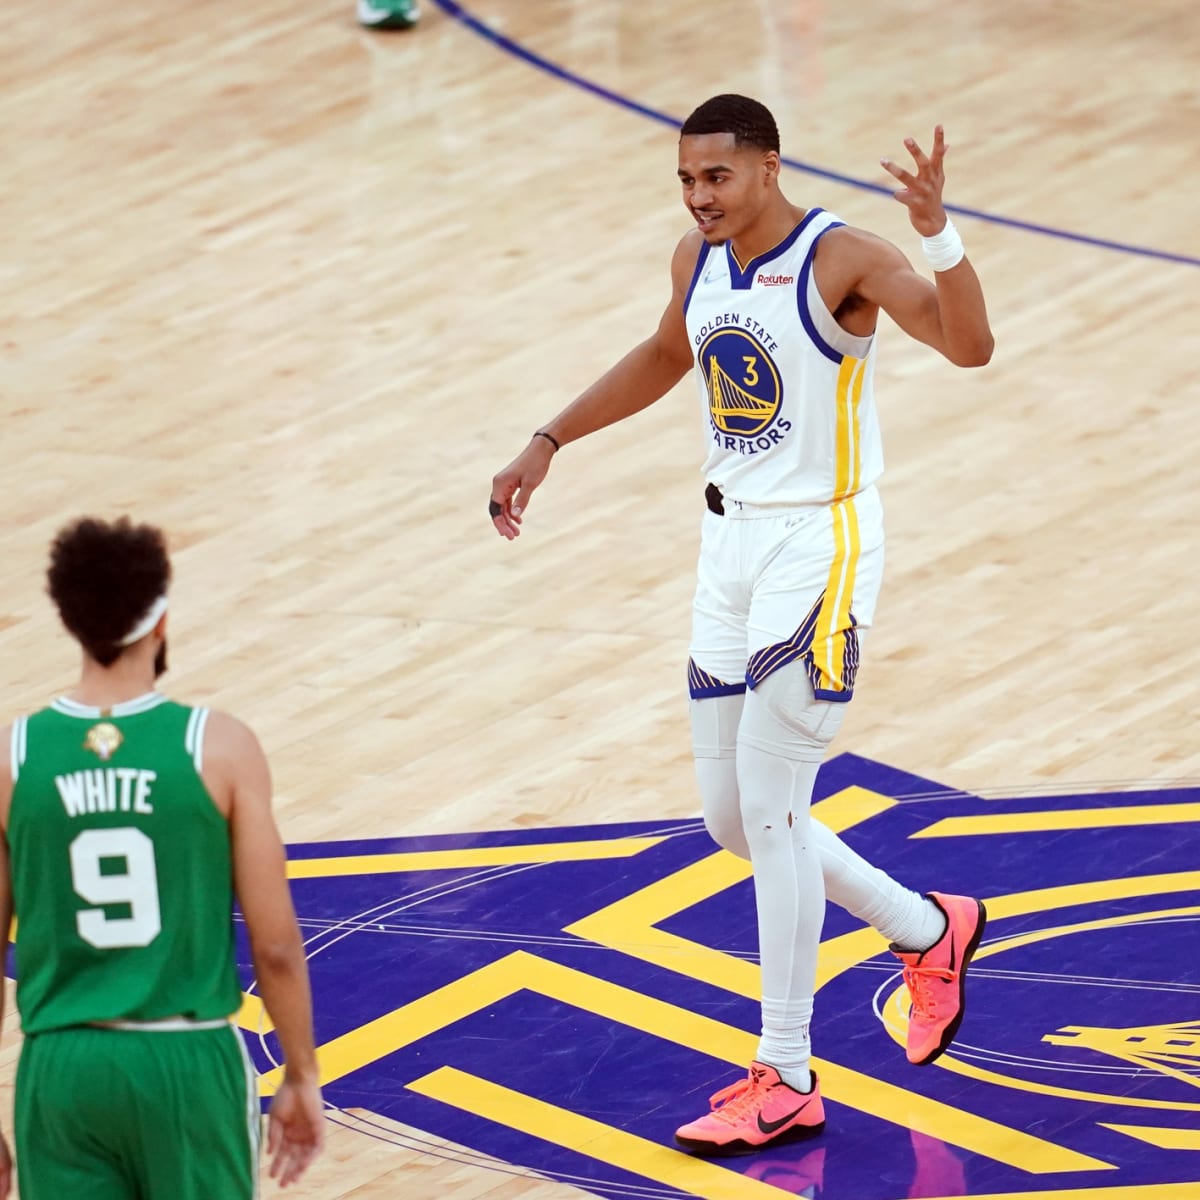 Warriors level NBA finals as Poole's halfcourt buzzer-beater